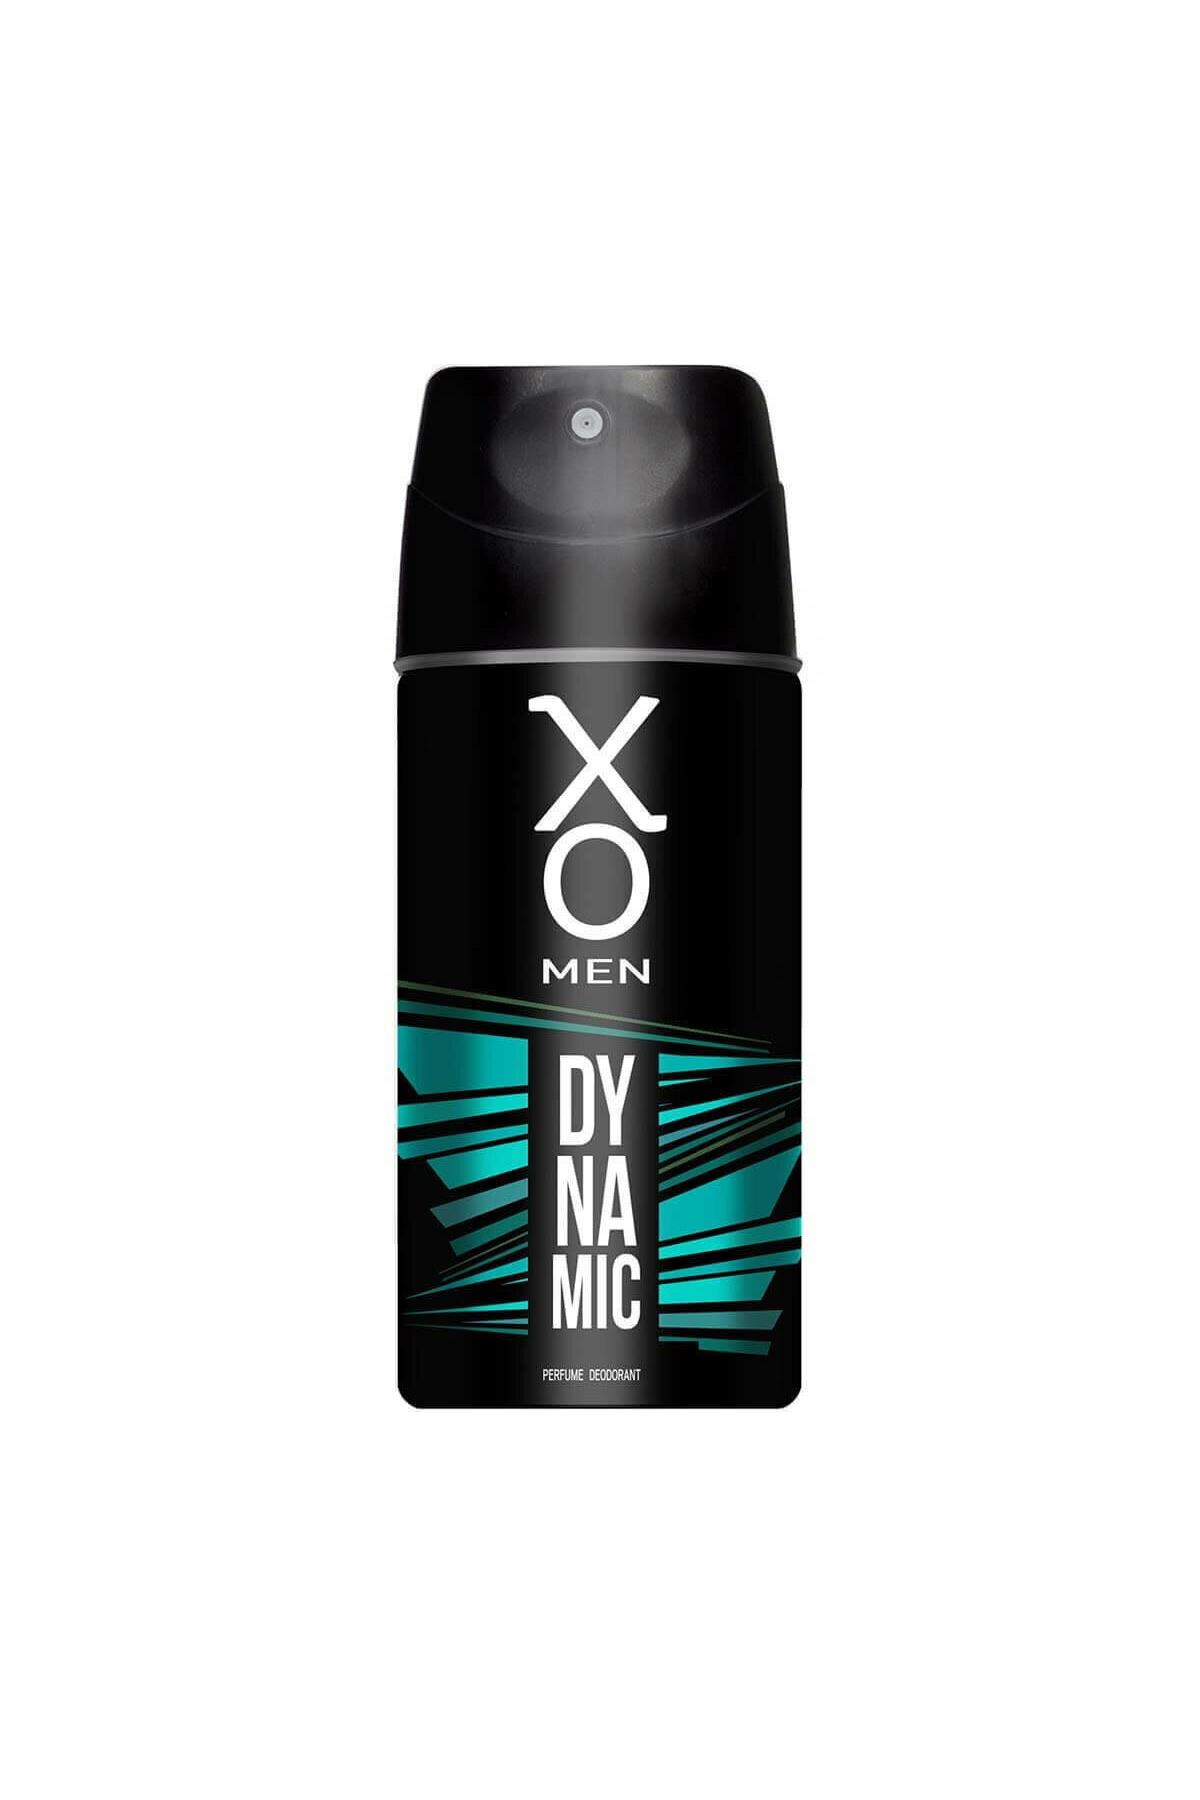 xo-dynamic-erkek-deodorant-150-ml-9425-1.jpg